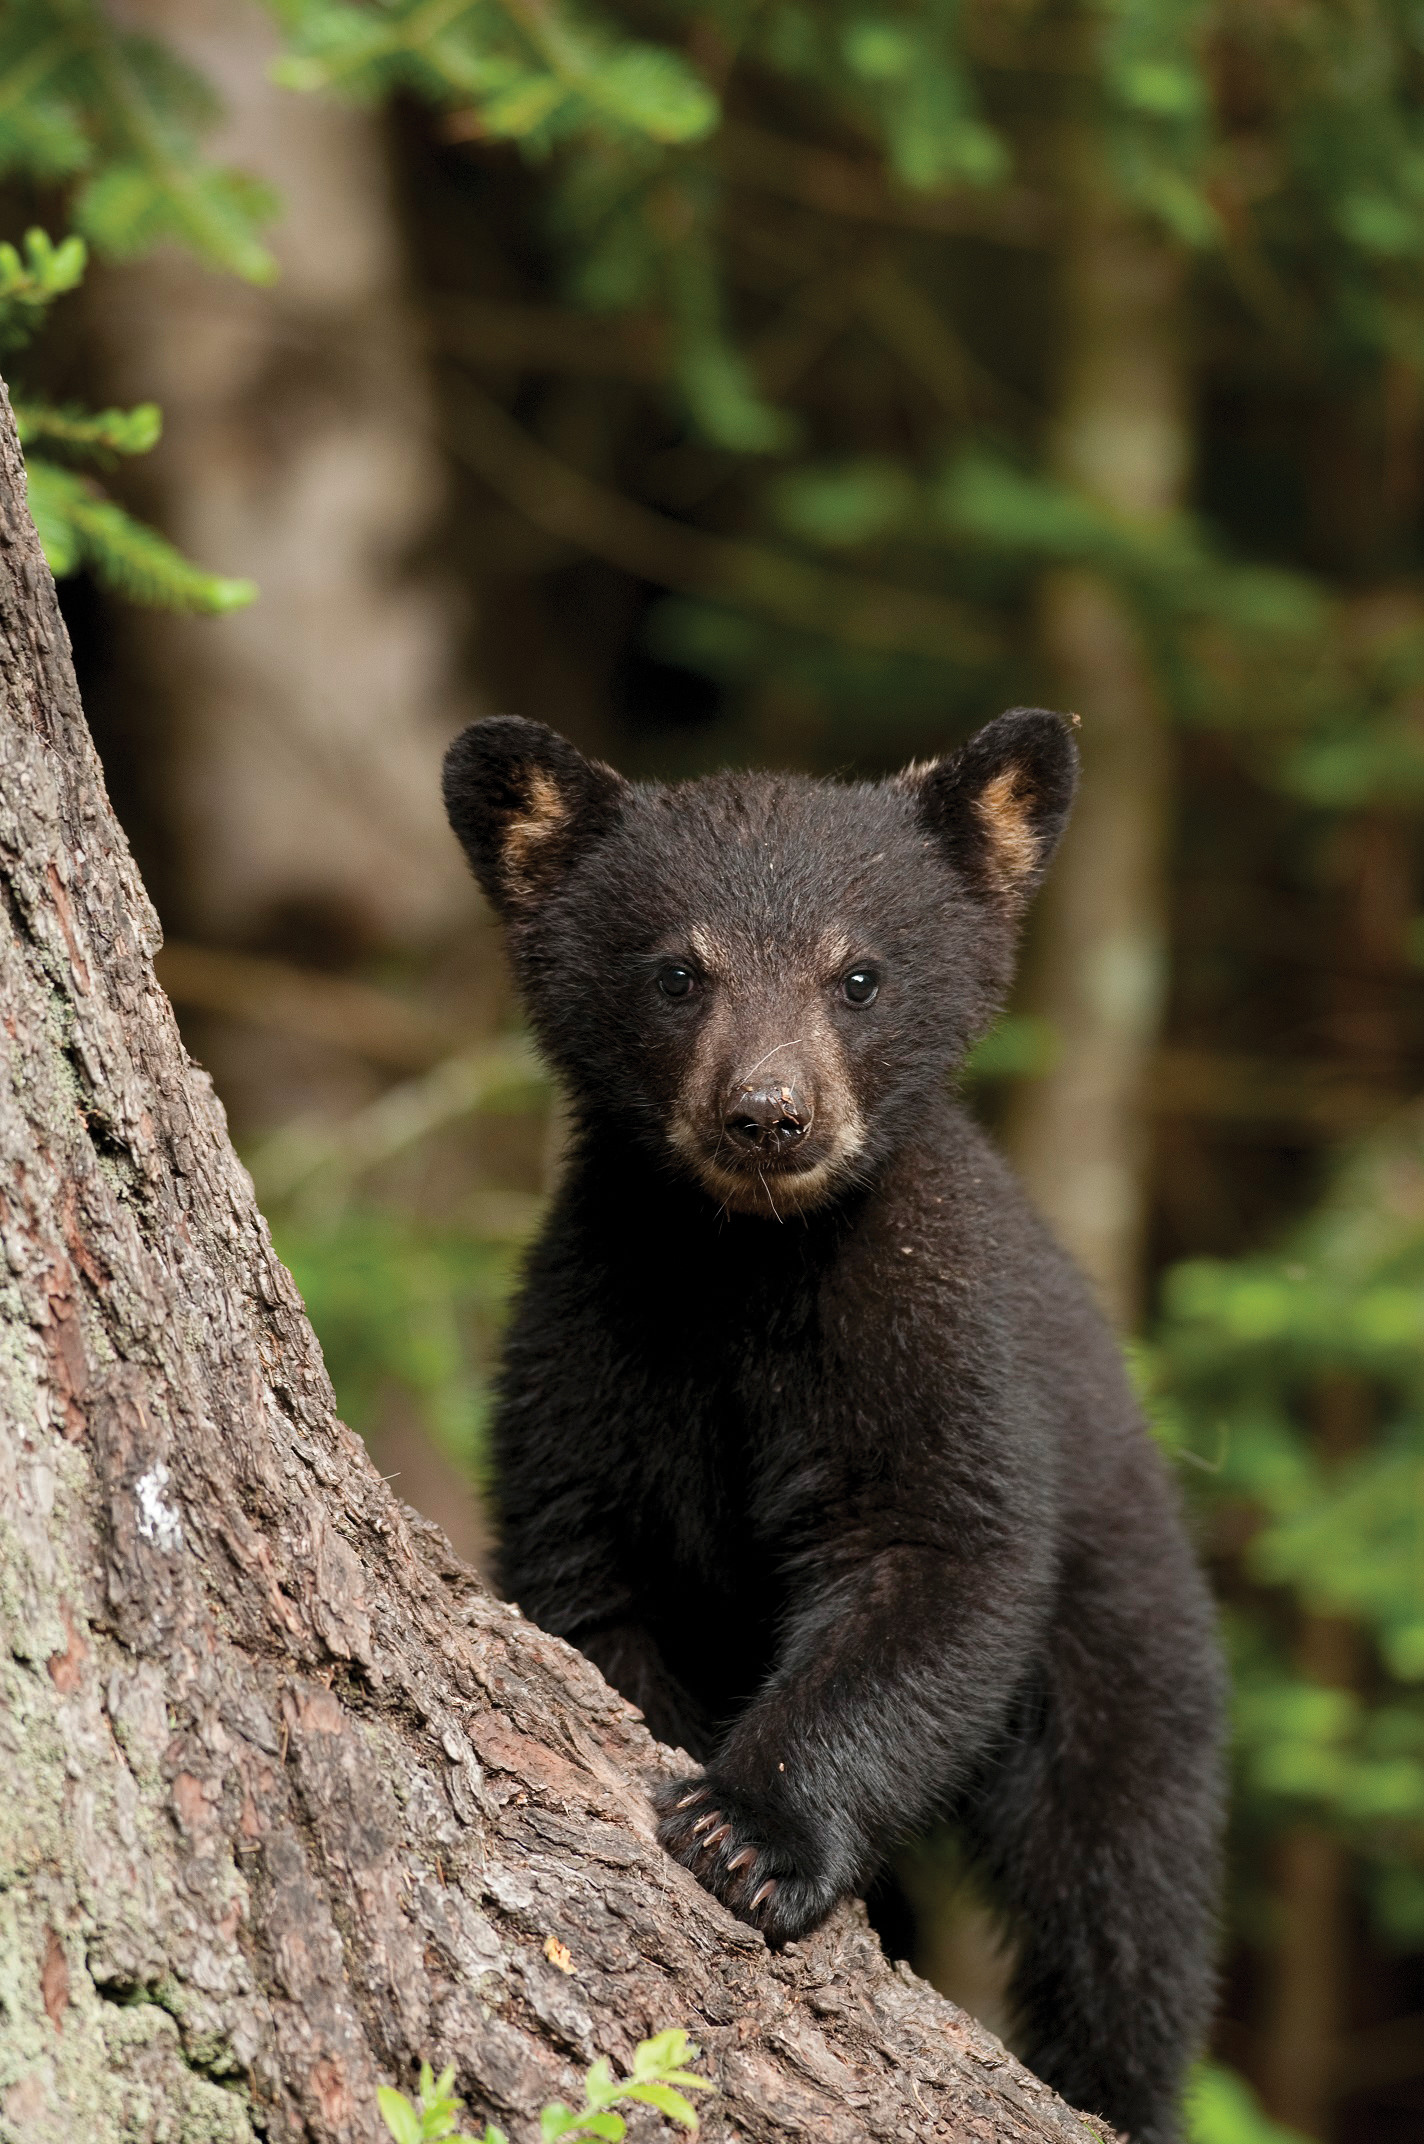 Black bear (Ursus americanus) cub.